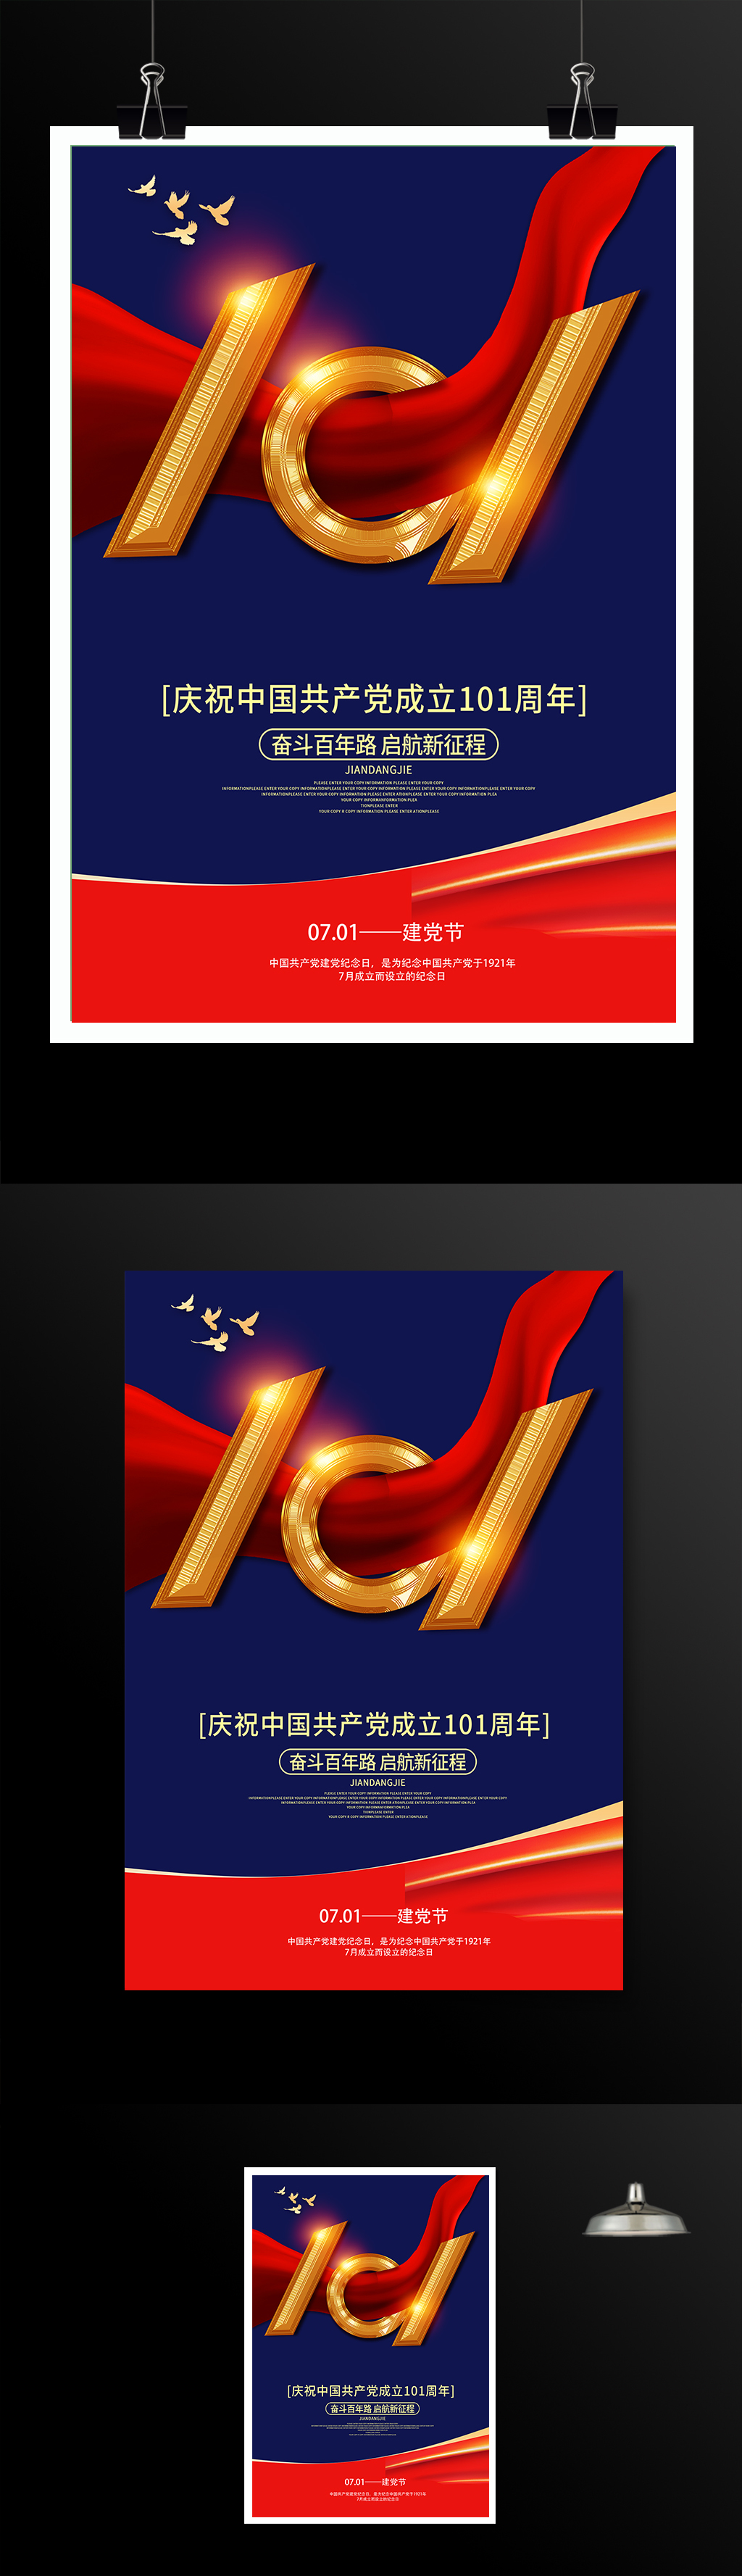 太祖中国共产党成立101周年海报